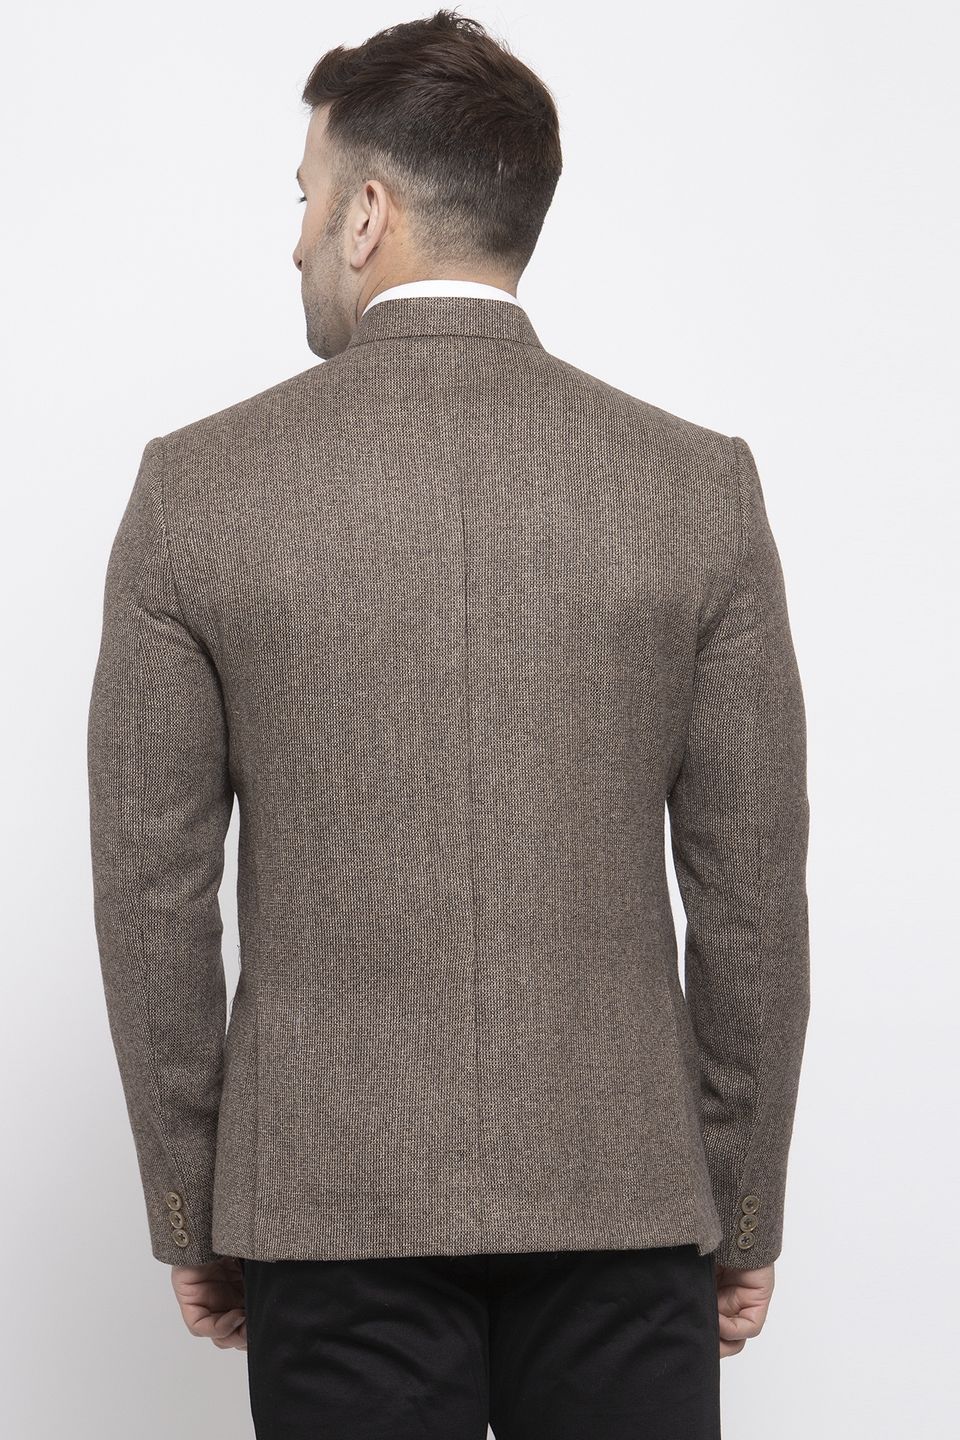 Wintage Men's Tweed Wool Casual and Festive Blazer Coat Jacket:Brown